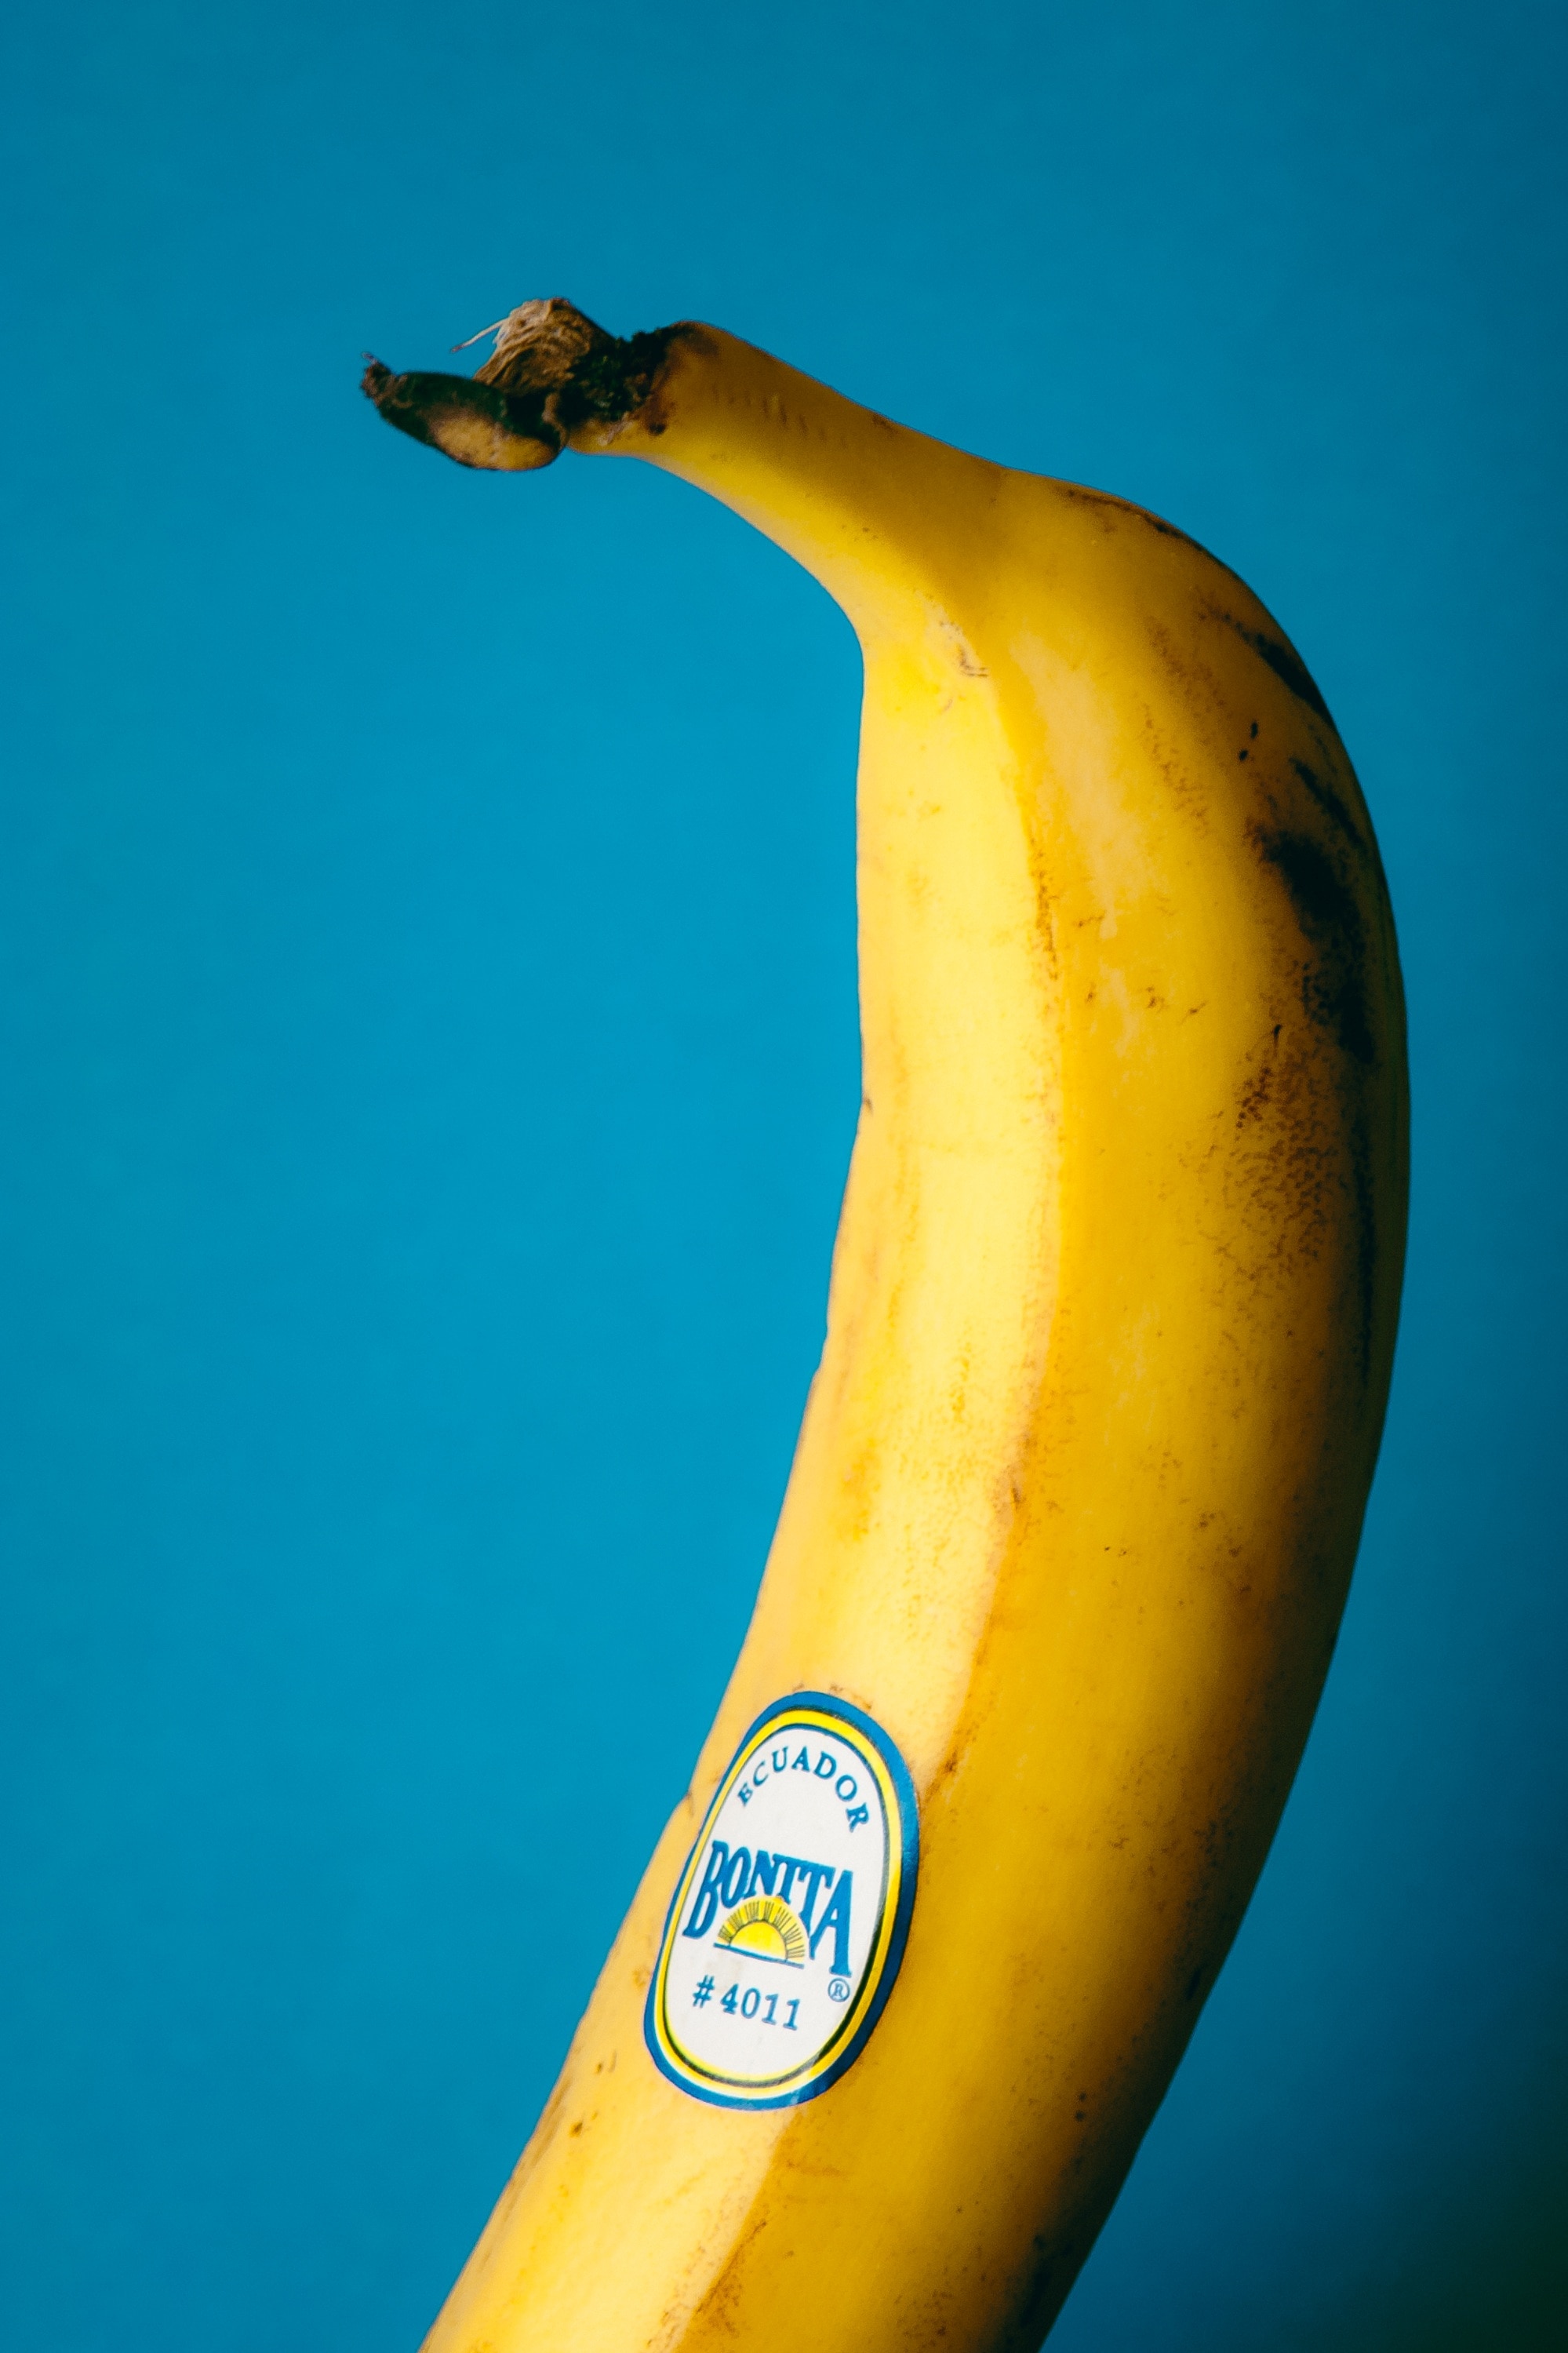 Banana fruit on blue background